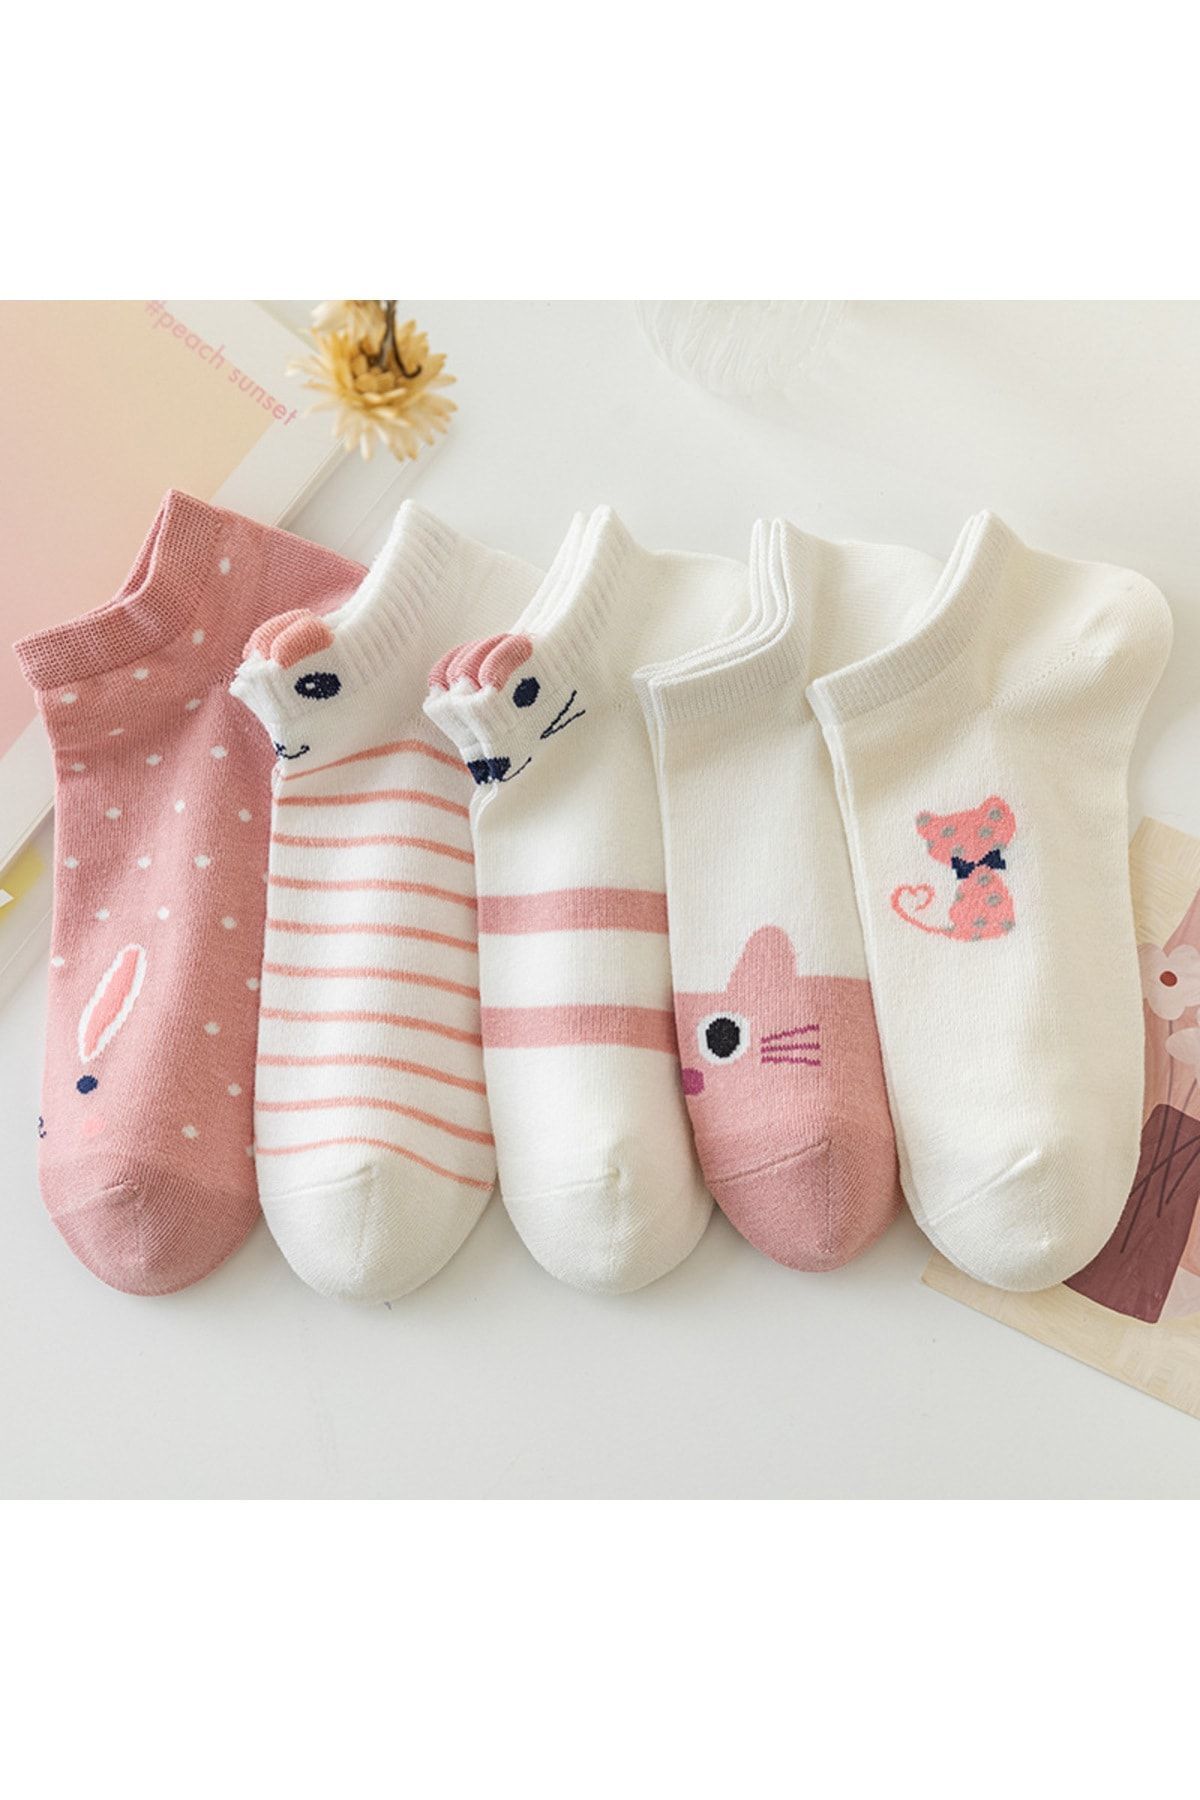 çorapmanya 5 Çift Sevimli 3 Boyutlu Çok Renkli Kedi Karikatür Desenli Kadın Patik Çorap Yıkanmış Kokulu